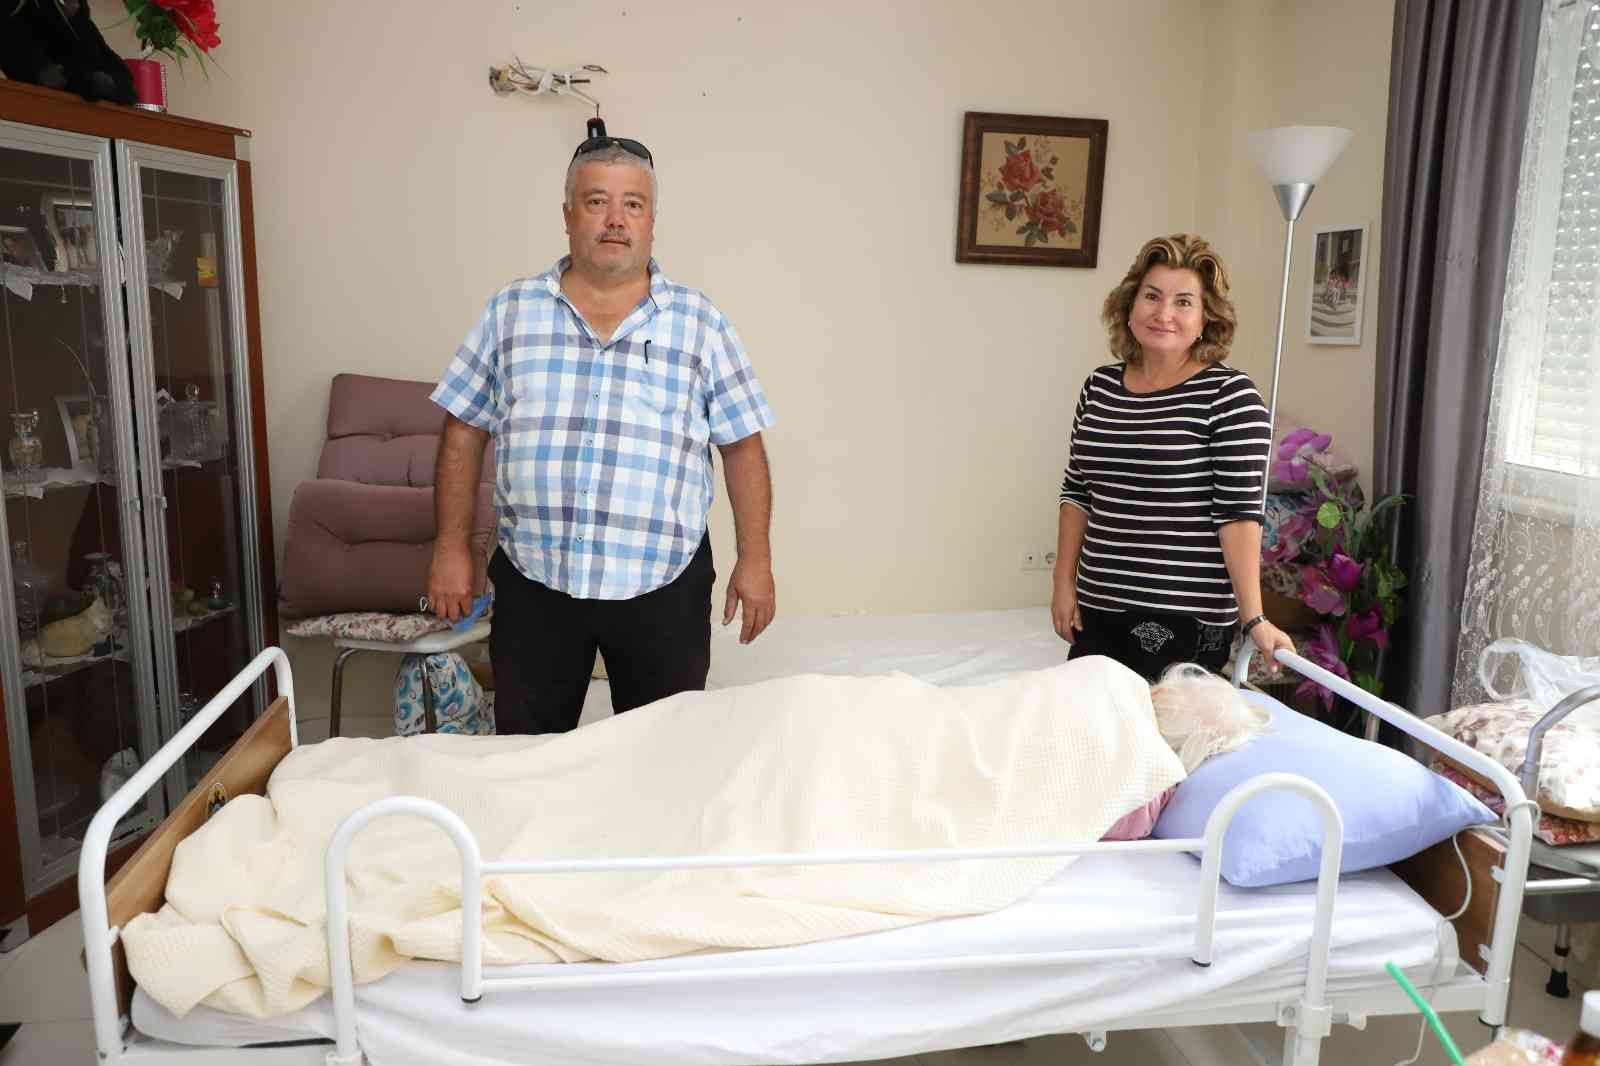 Alanya Belediyesi’nden Alman vatandaşa hasta bakım yatağı #antalya